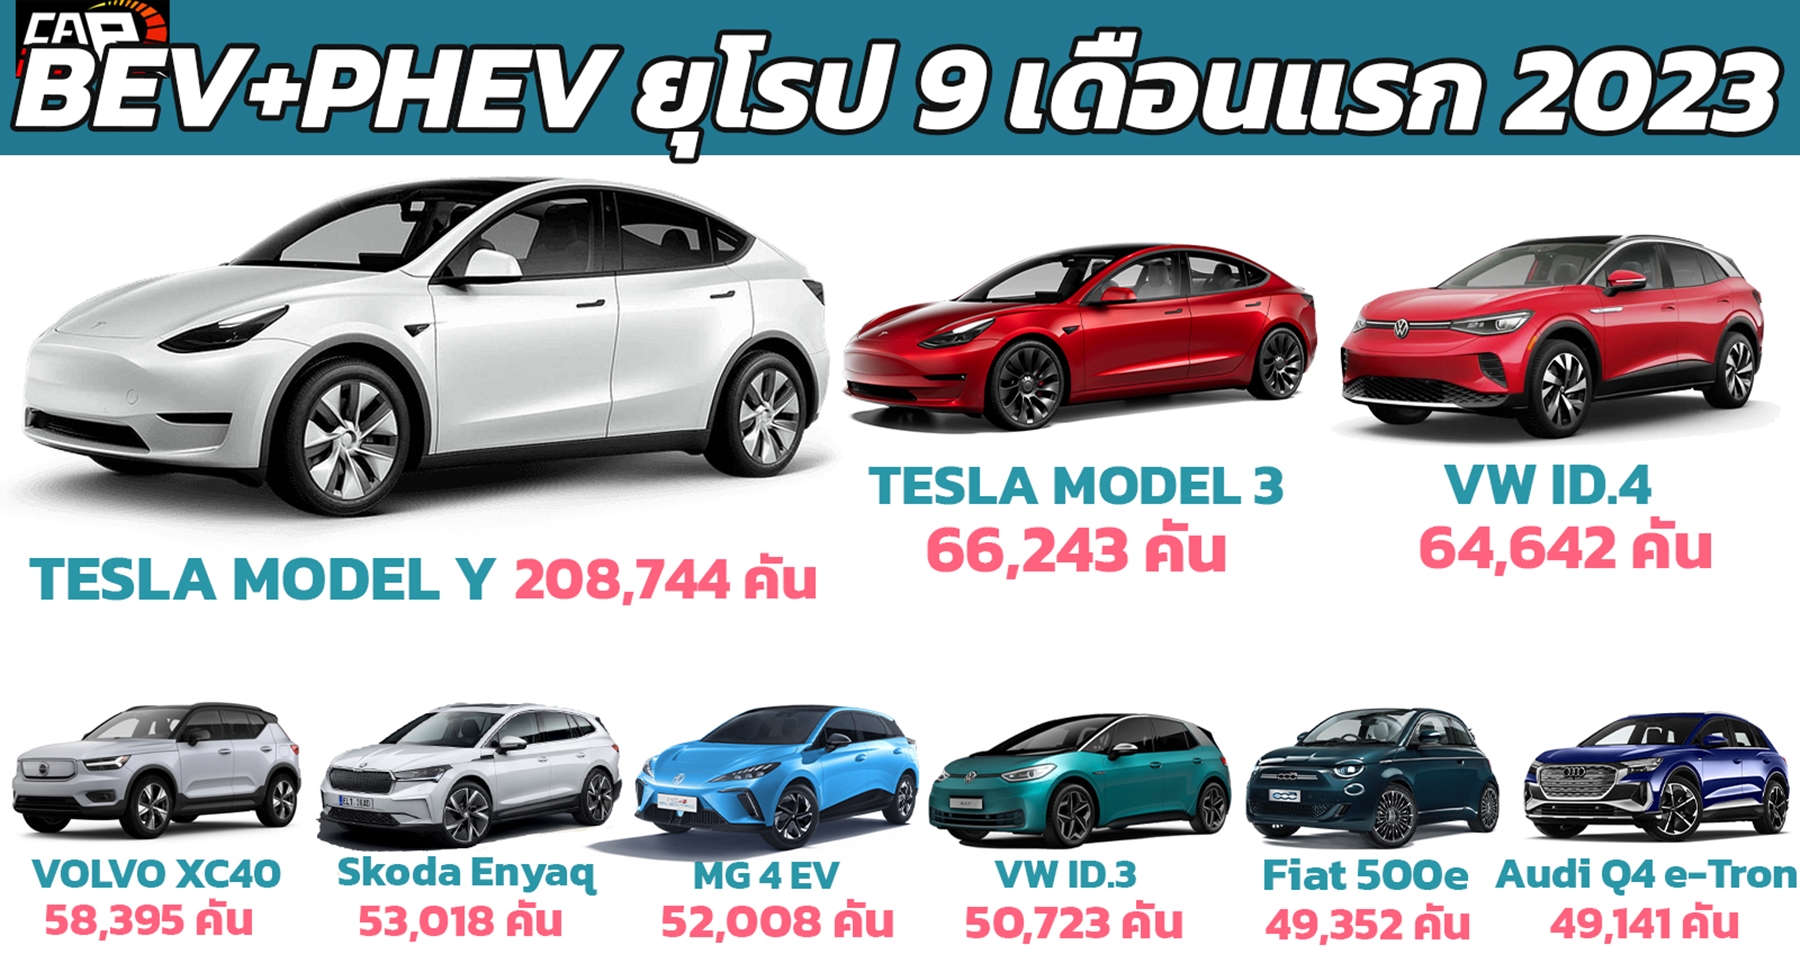 ยอดขายรถยนต์ไฟฟ้า 9 เดือนแรก ปี 2023 ในยุโรป